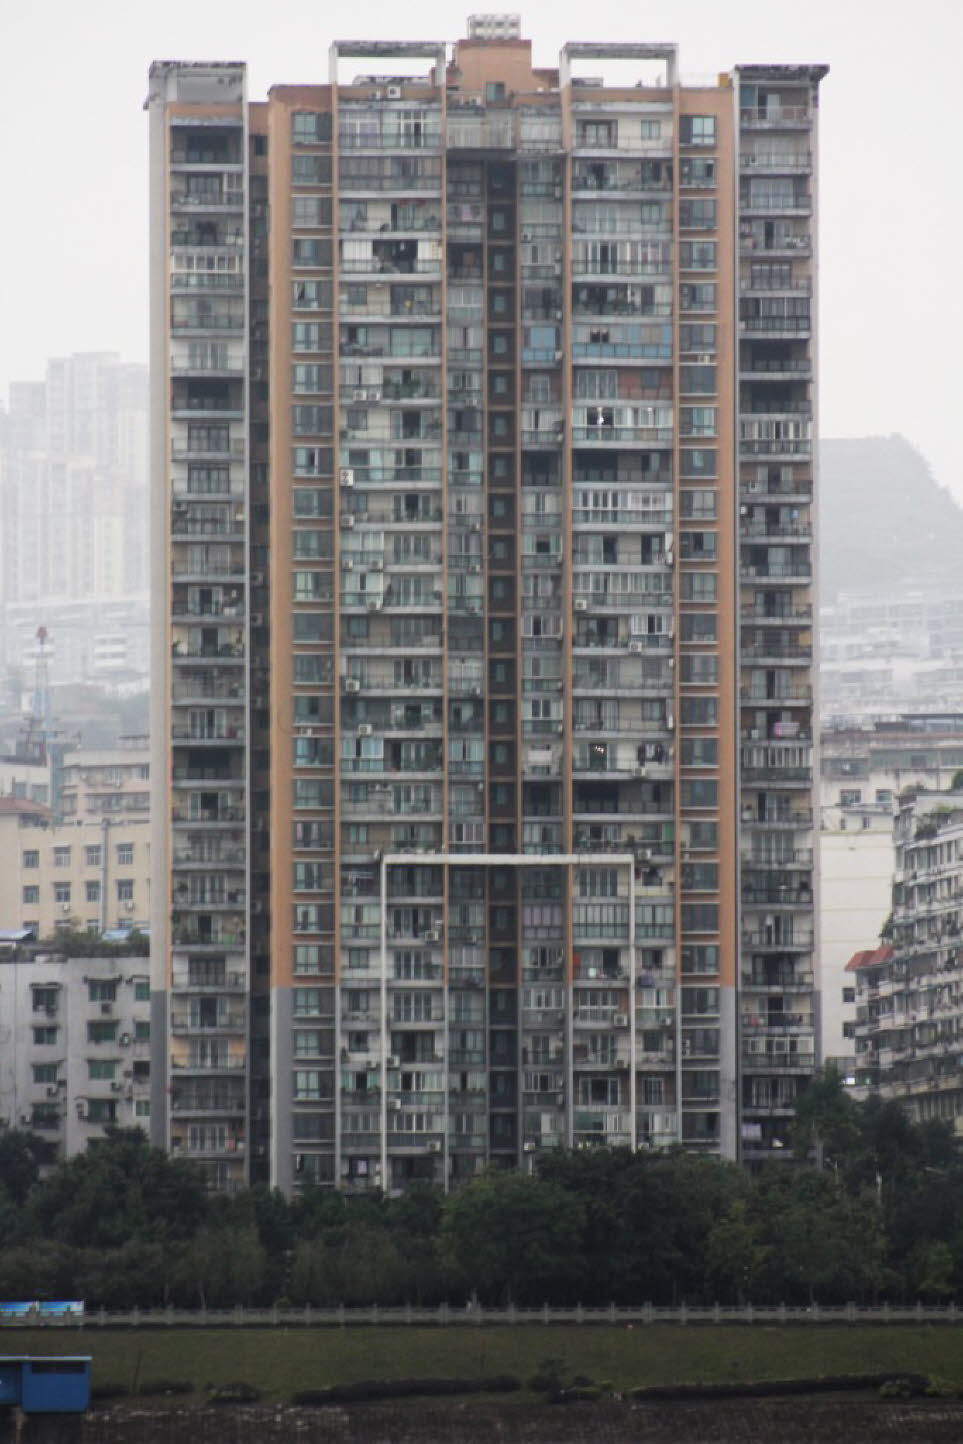 Chongqing / China: Viele Elemente der modernen Stadtplanungspolitik hatten verheerende Folgen für die Bevölkerung und schufen mehr Probleme, als sie lösten. Fast alle historischen Häuser der auf steilen Hügeln erbauten und von ebensolchen umgebenen Bergst